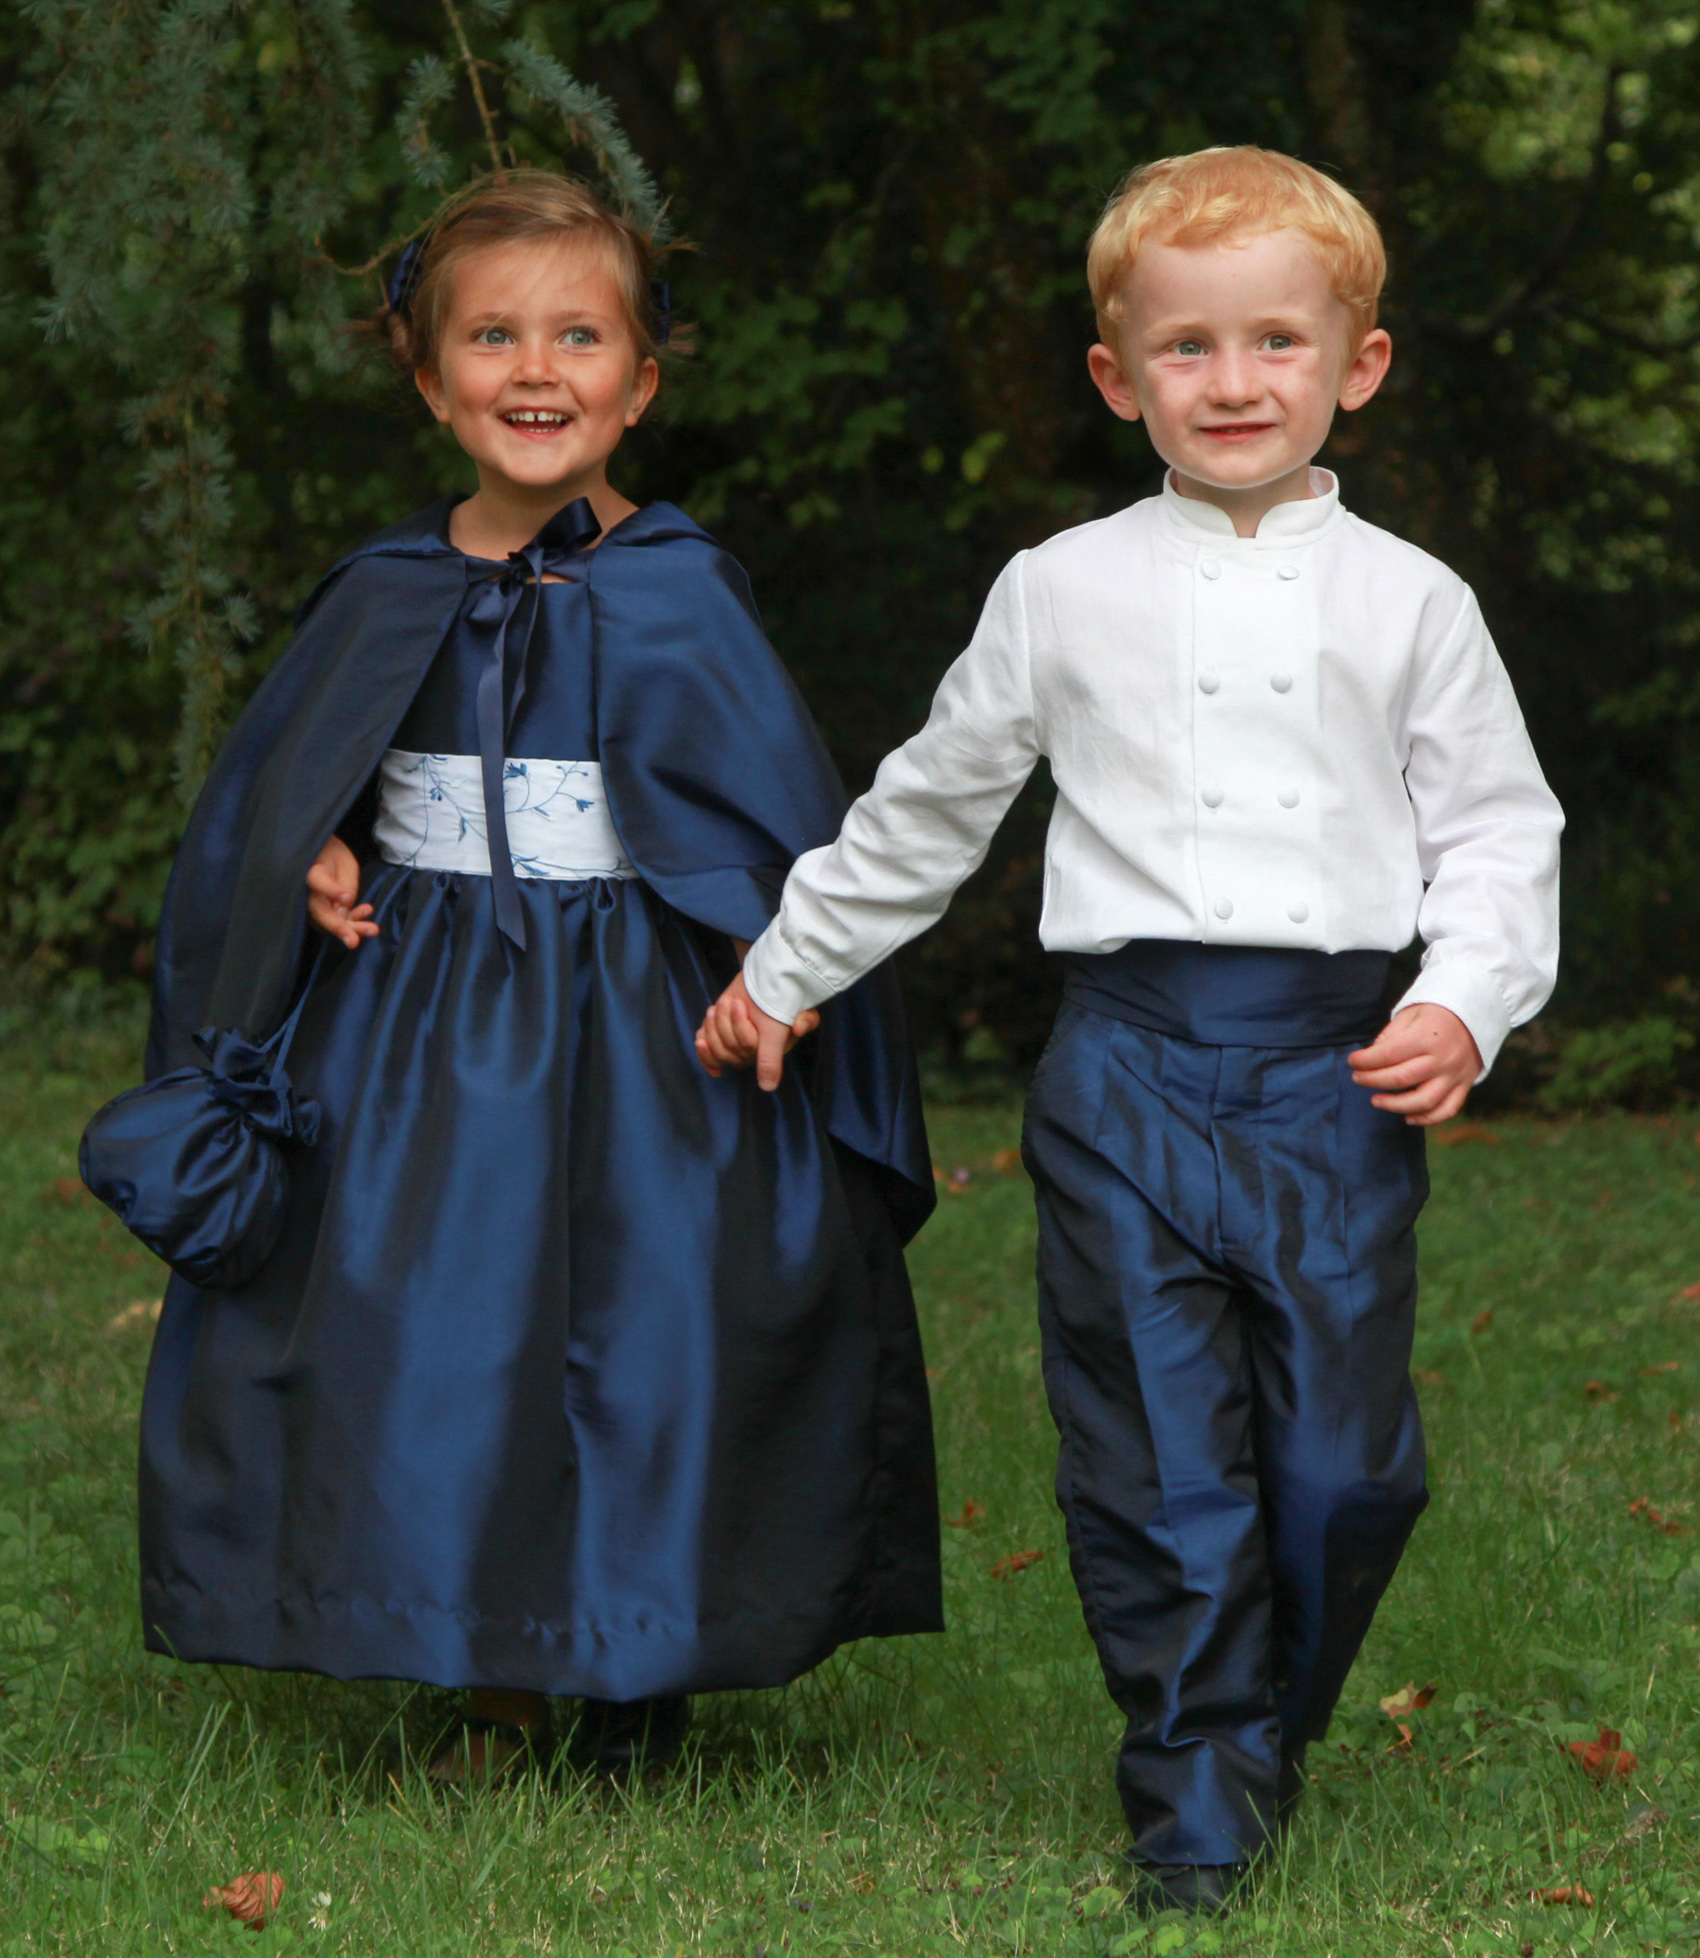 88 Little Eglantine flowergirl pageboy wedding clothes for children